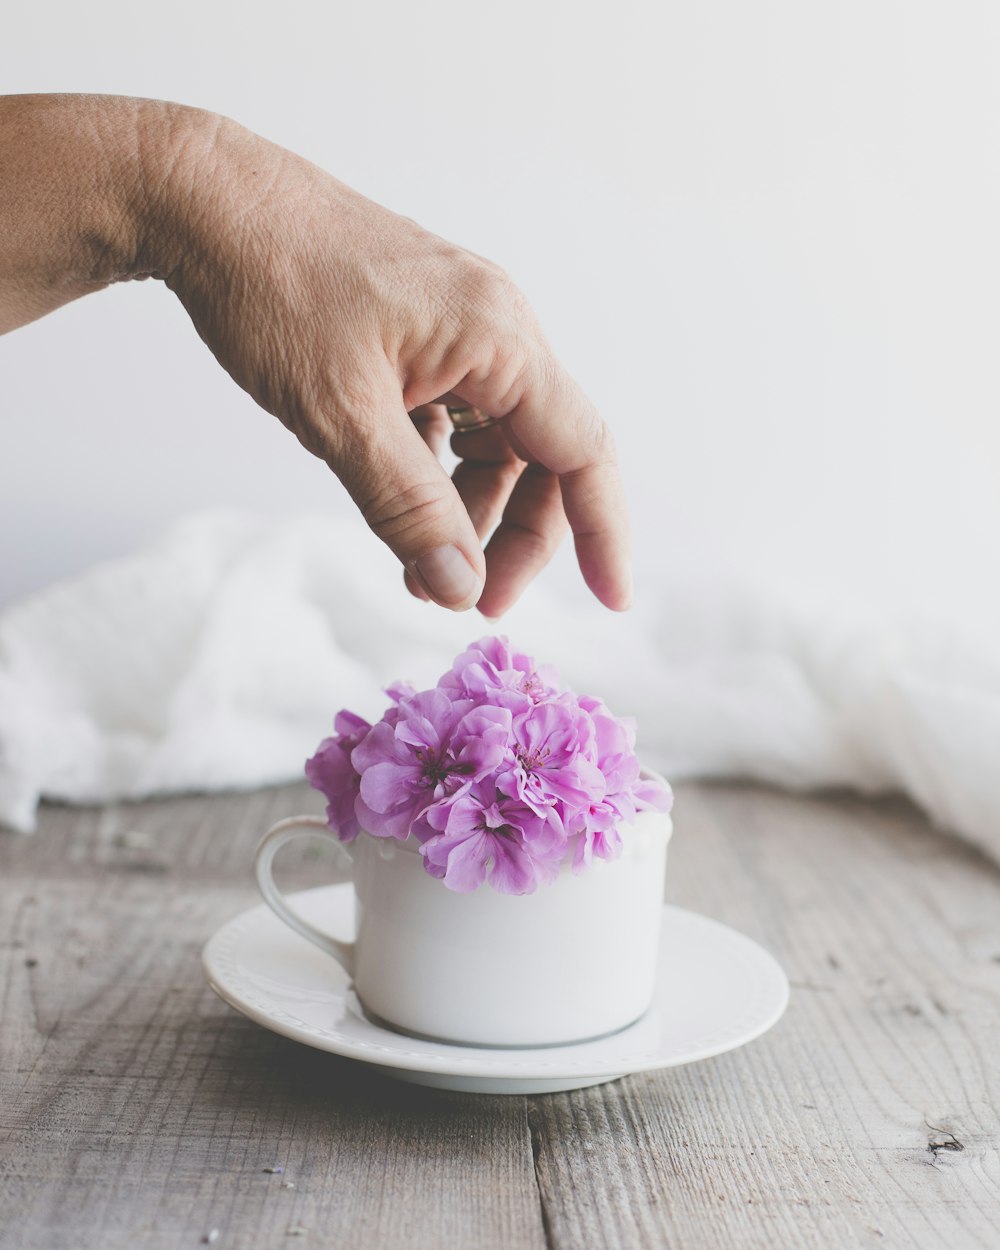 紫色の花が描かれた白い陶器のマグカップを持っている人